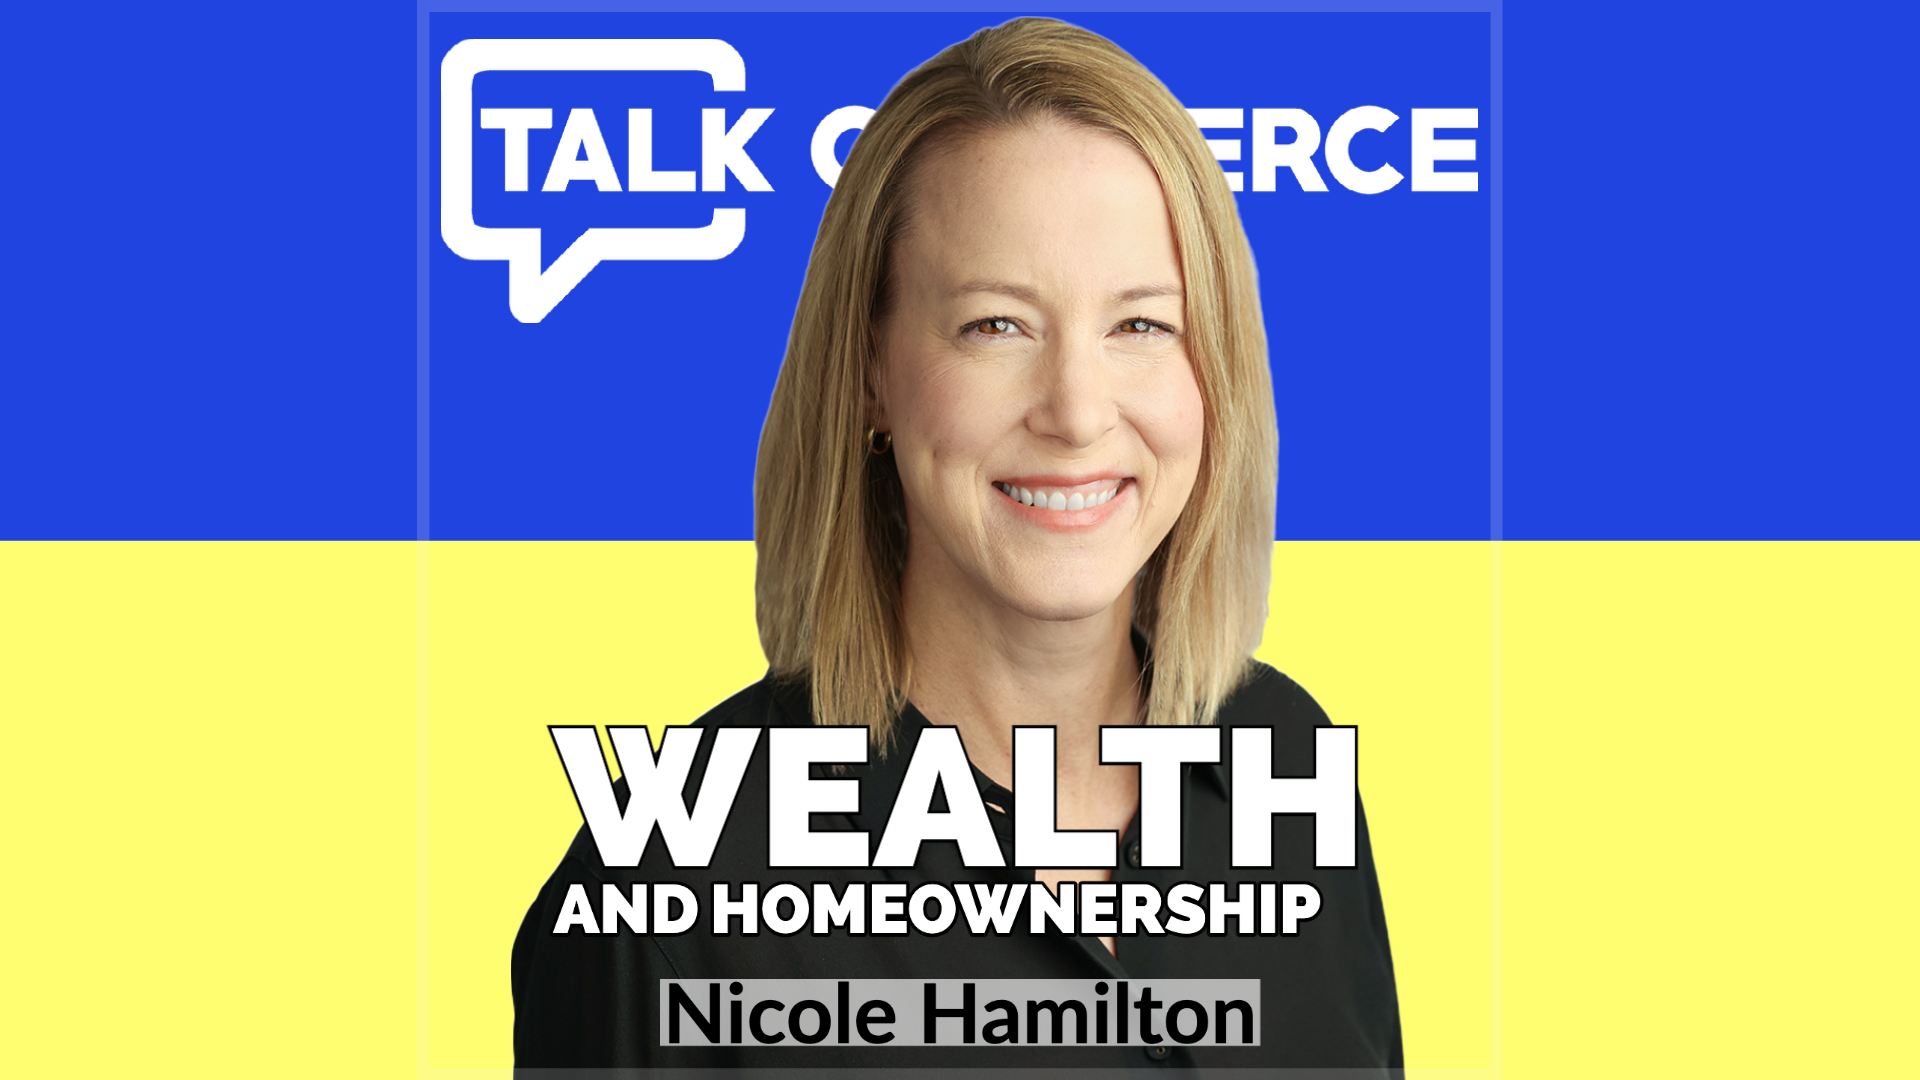 Talk-Commerce Nicole Hamilton